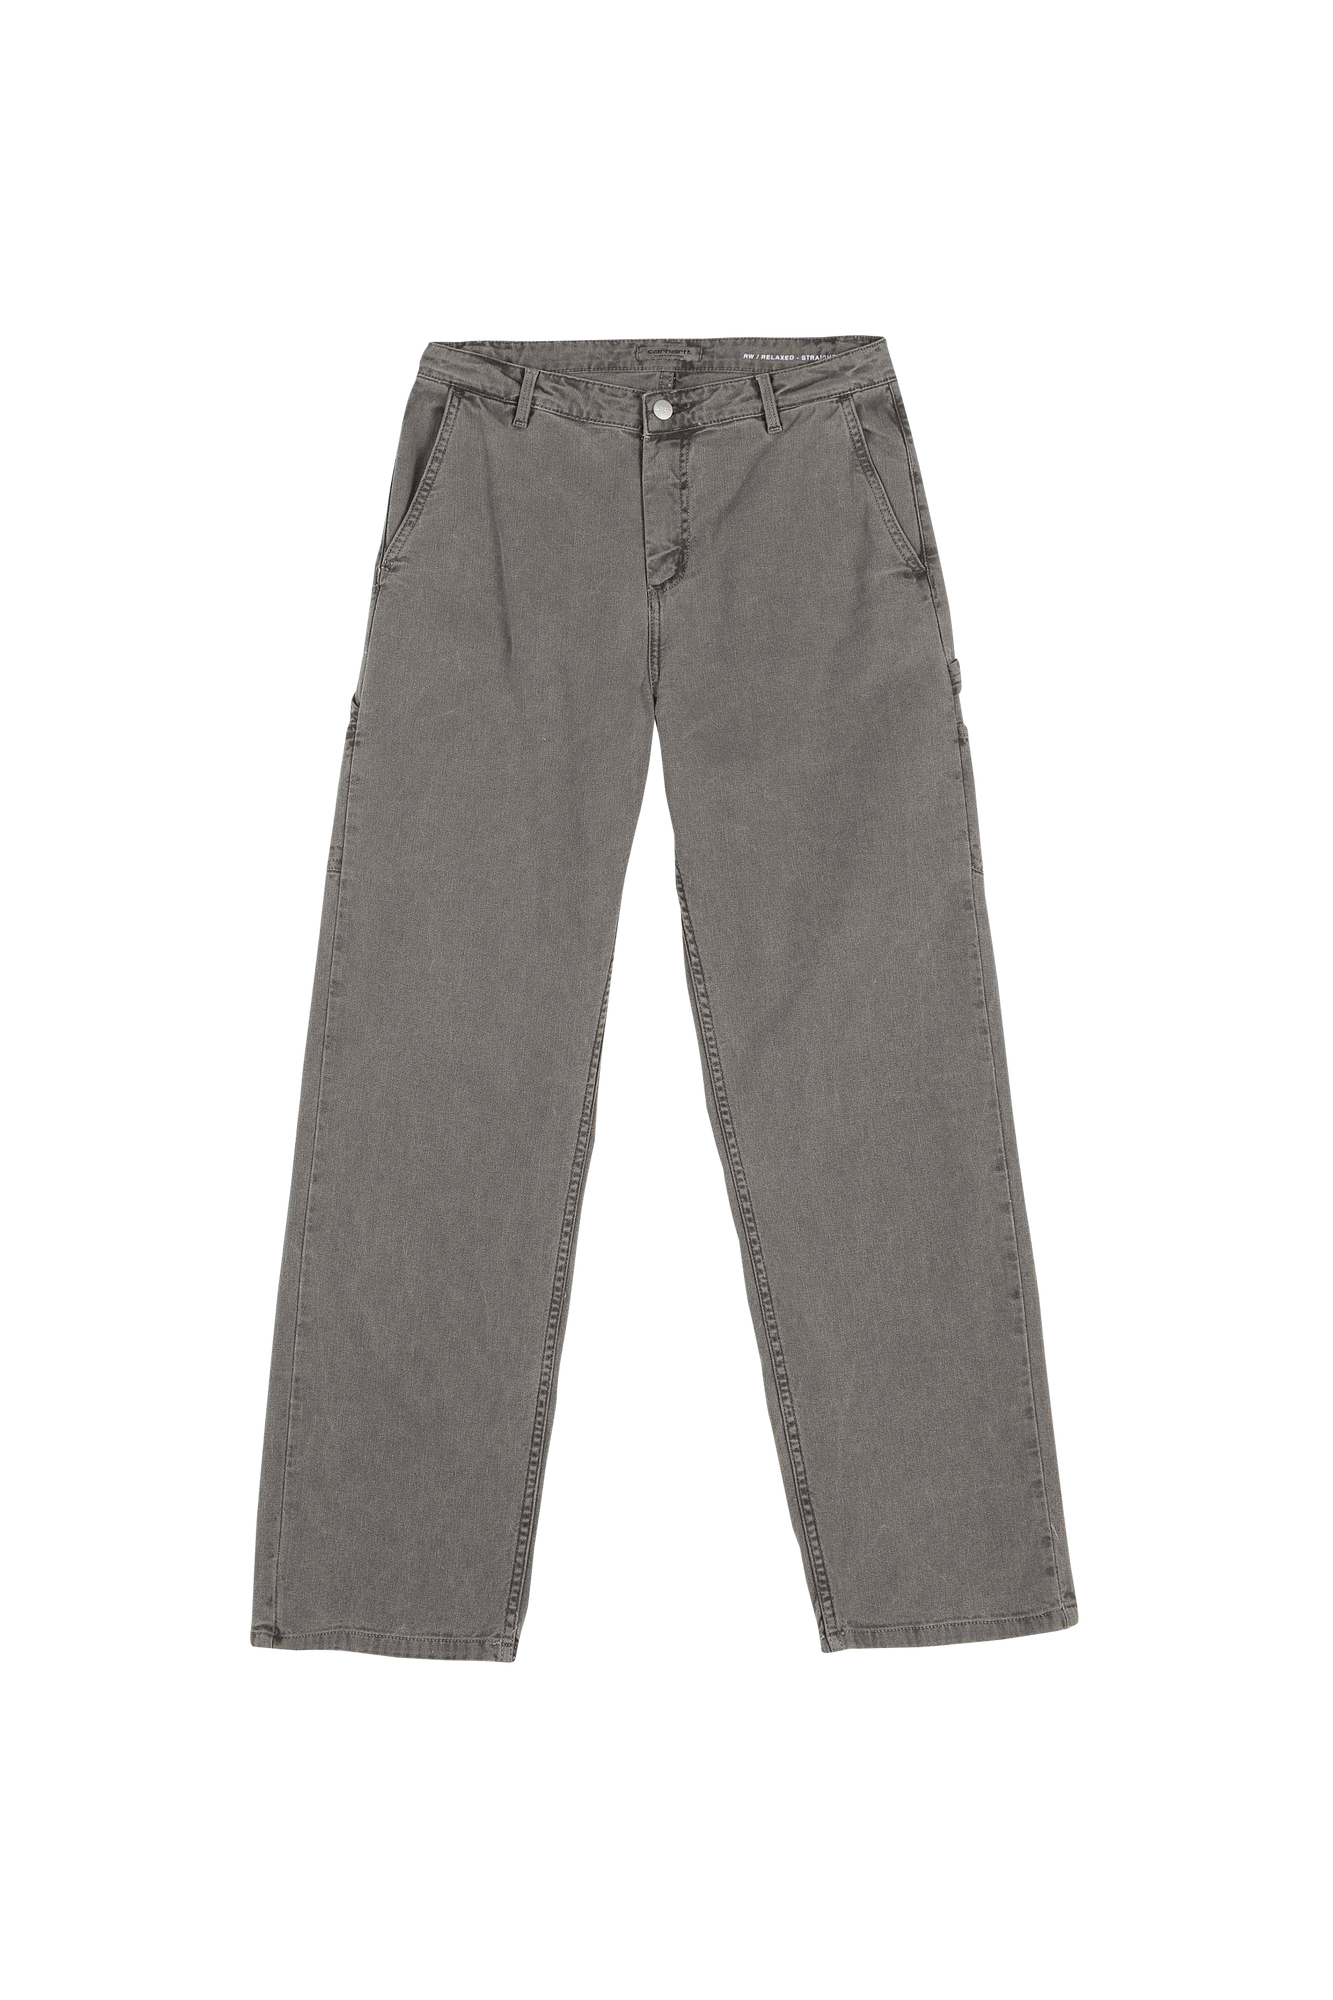 Carhartt Wip - Pantalon en coton mélangé